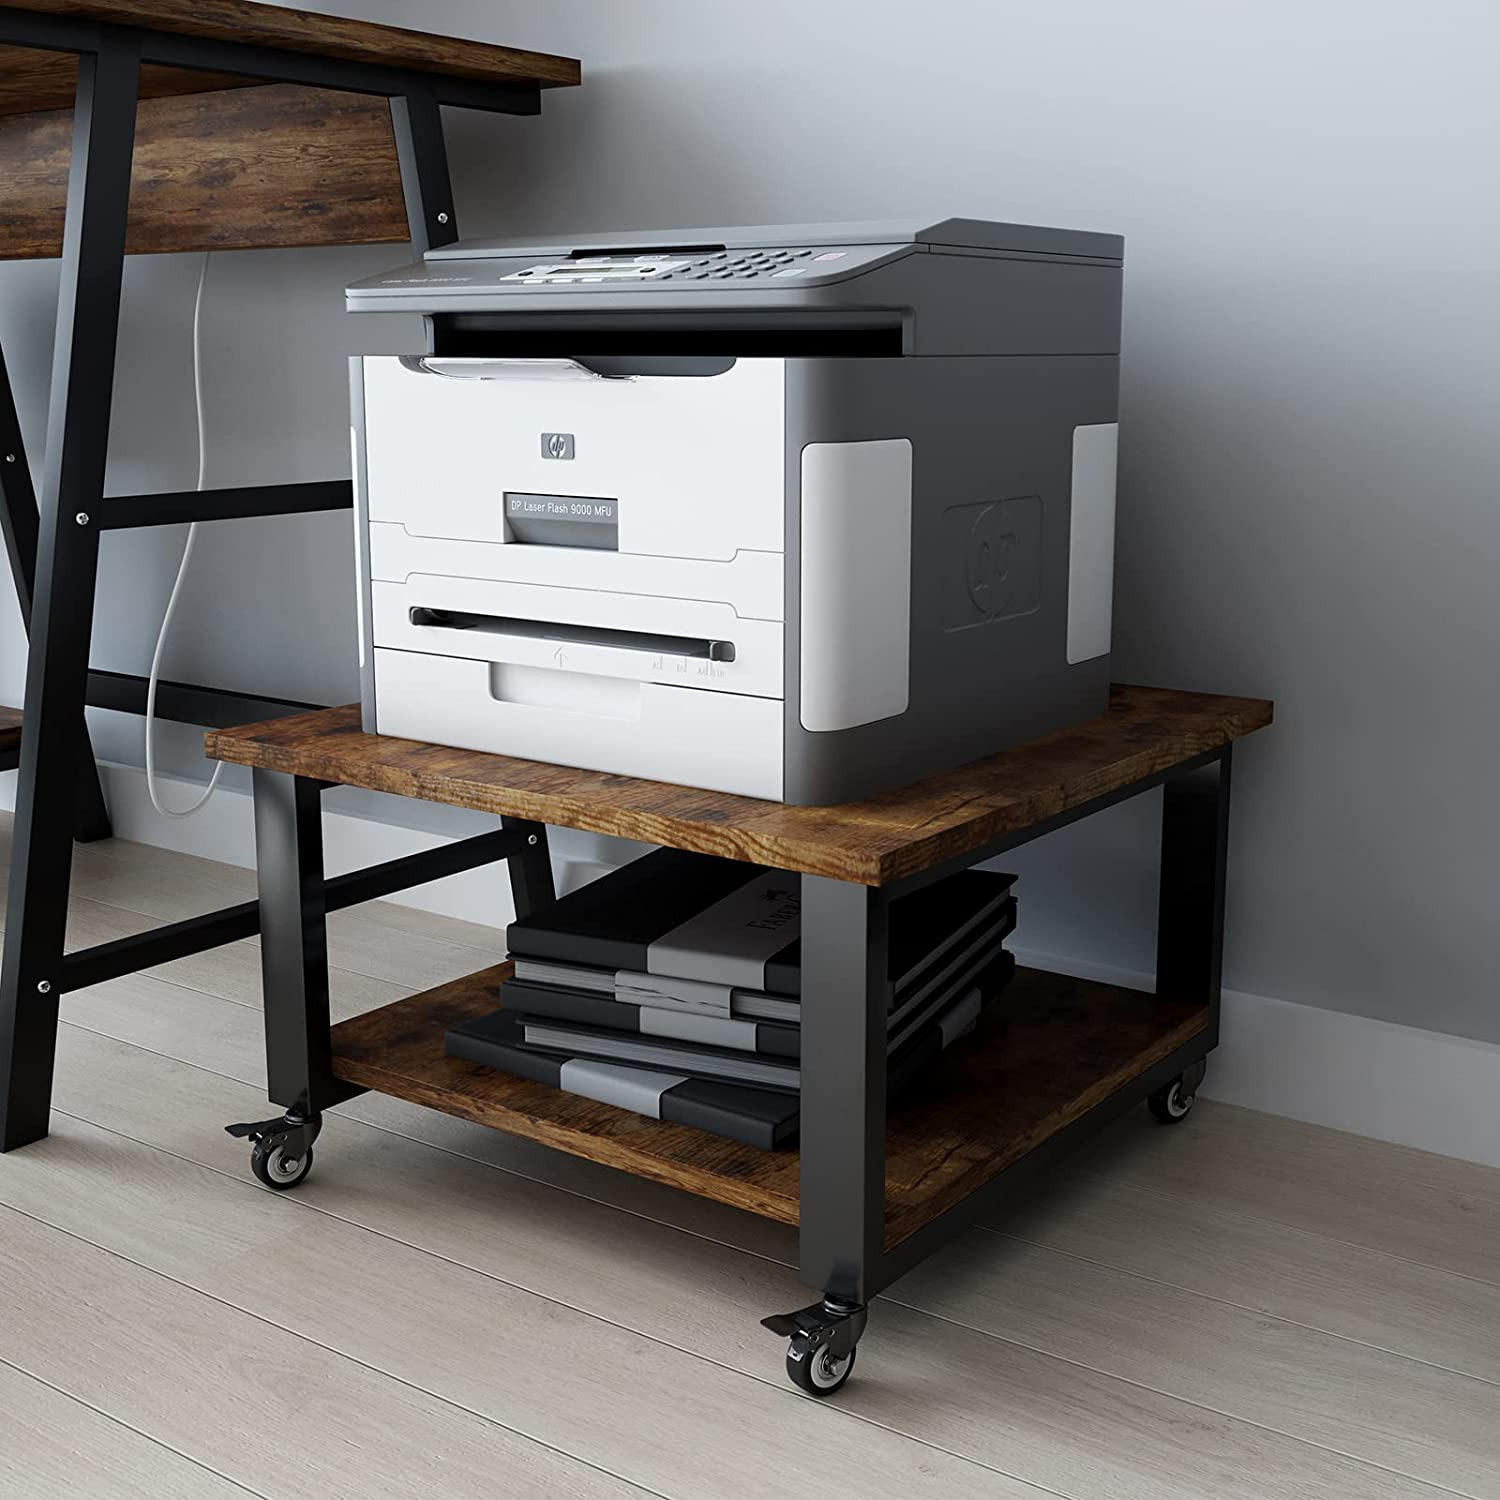 2 Tier Laser Printer Stand,19.7''X1